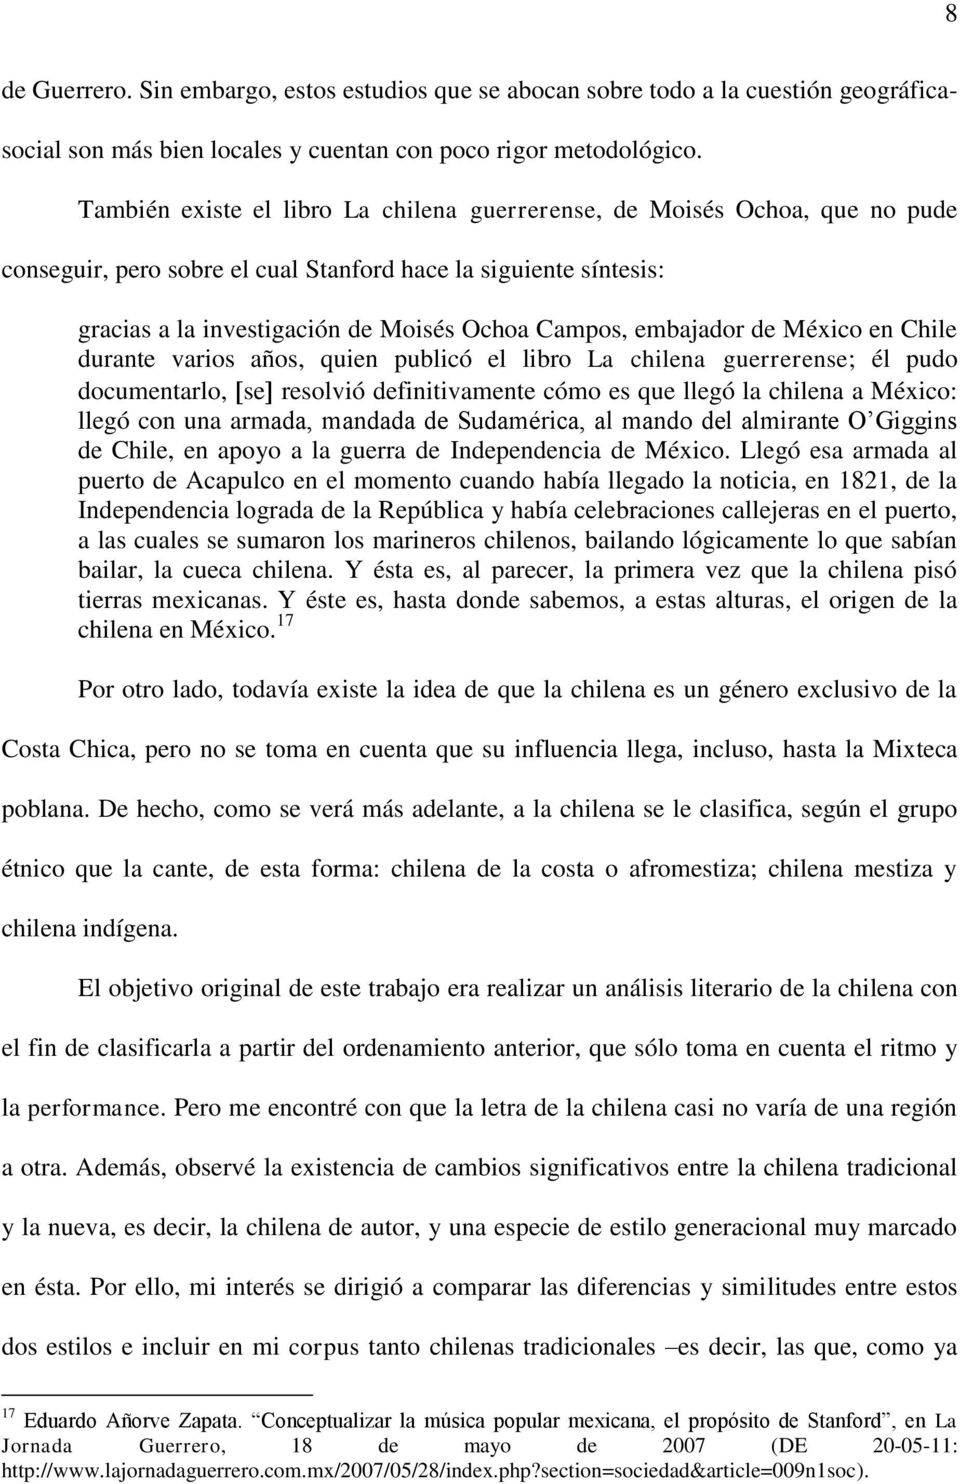 embajador de México en Chile durante varios años, quien publicó el libro La chilena guerrerense; él pudo documentarlo, se resolvió definitivamente cómo es que llegó la chilena a México: llegó con una